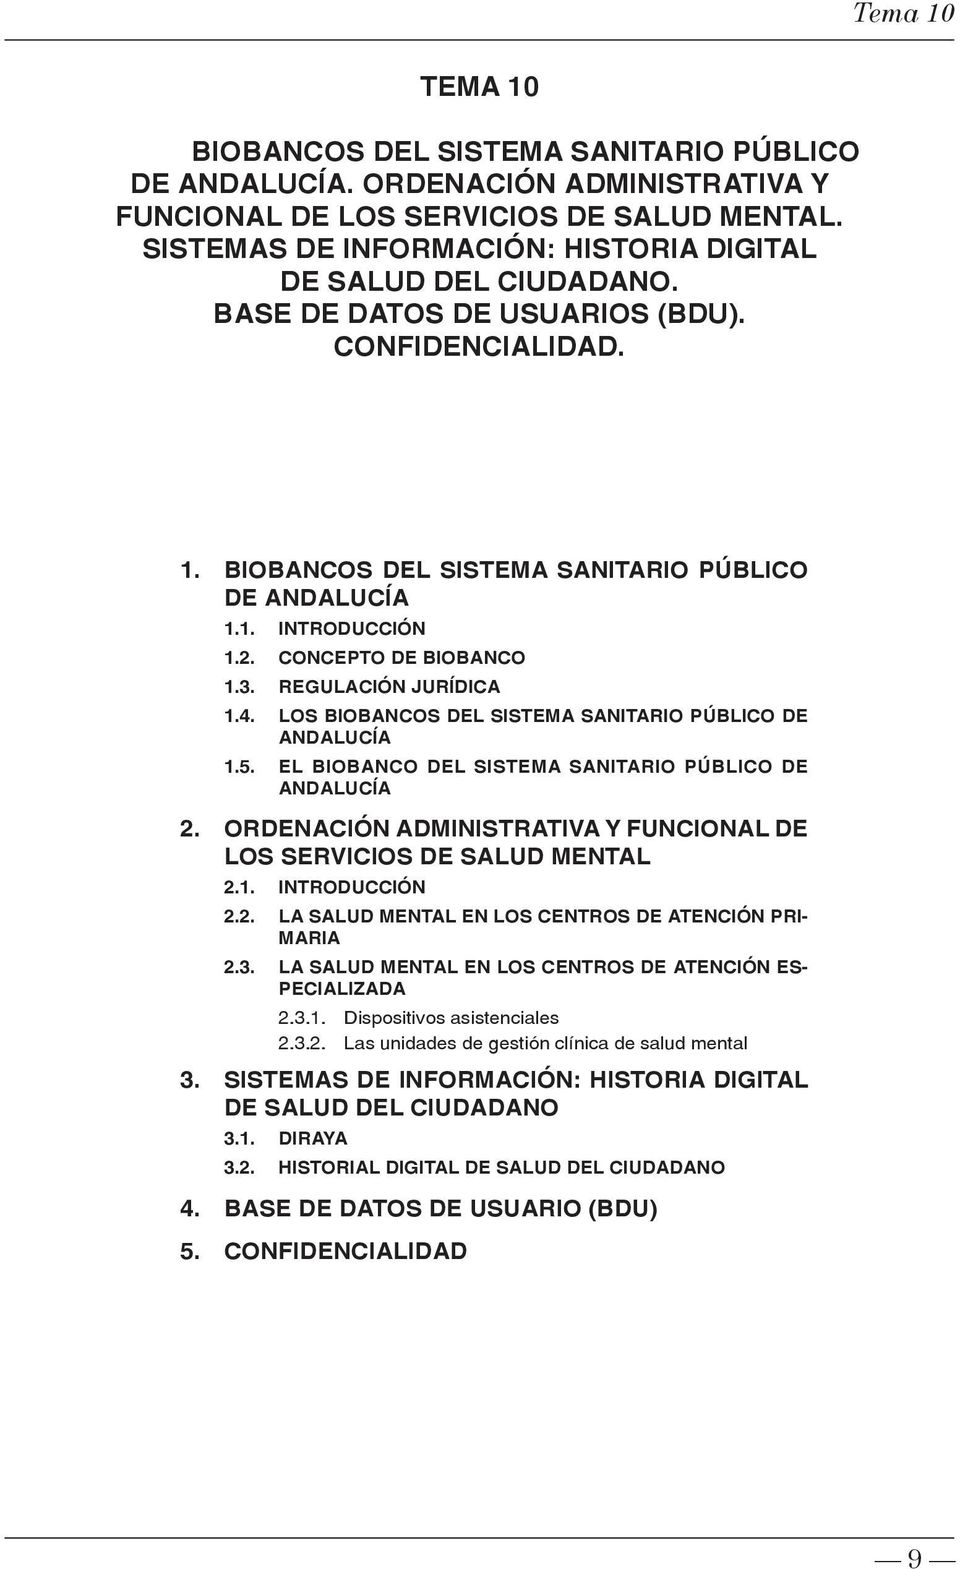 LOS BIOBANCOS DEL SISTEMA SANITARIO PÚBLICO DE ANDALUCÍA 1.5. EL BIOBANCO DEL SISTEMA SANITARIO PÚBLICO DE ANDALUCÍA 2. ORDENACIÓN ADMINISTRATIVA Y FUNCIONAL DE LOS SERVICIOS DE SALUD MENTAL 2.1. INTRODUCCIÓN 2.